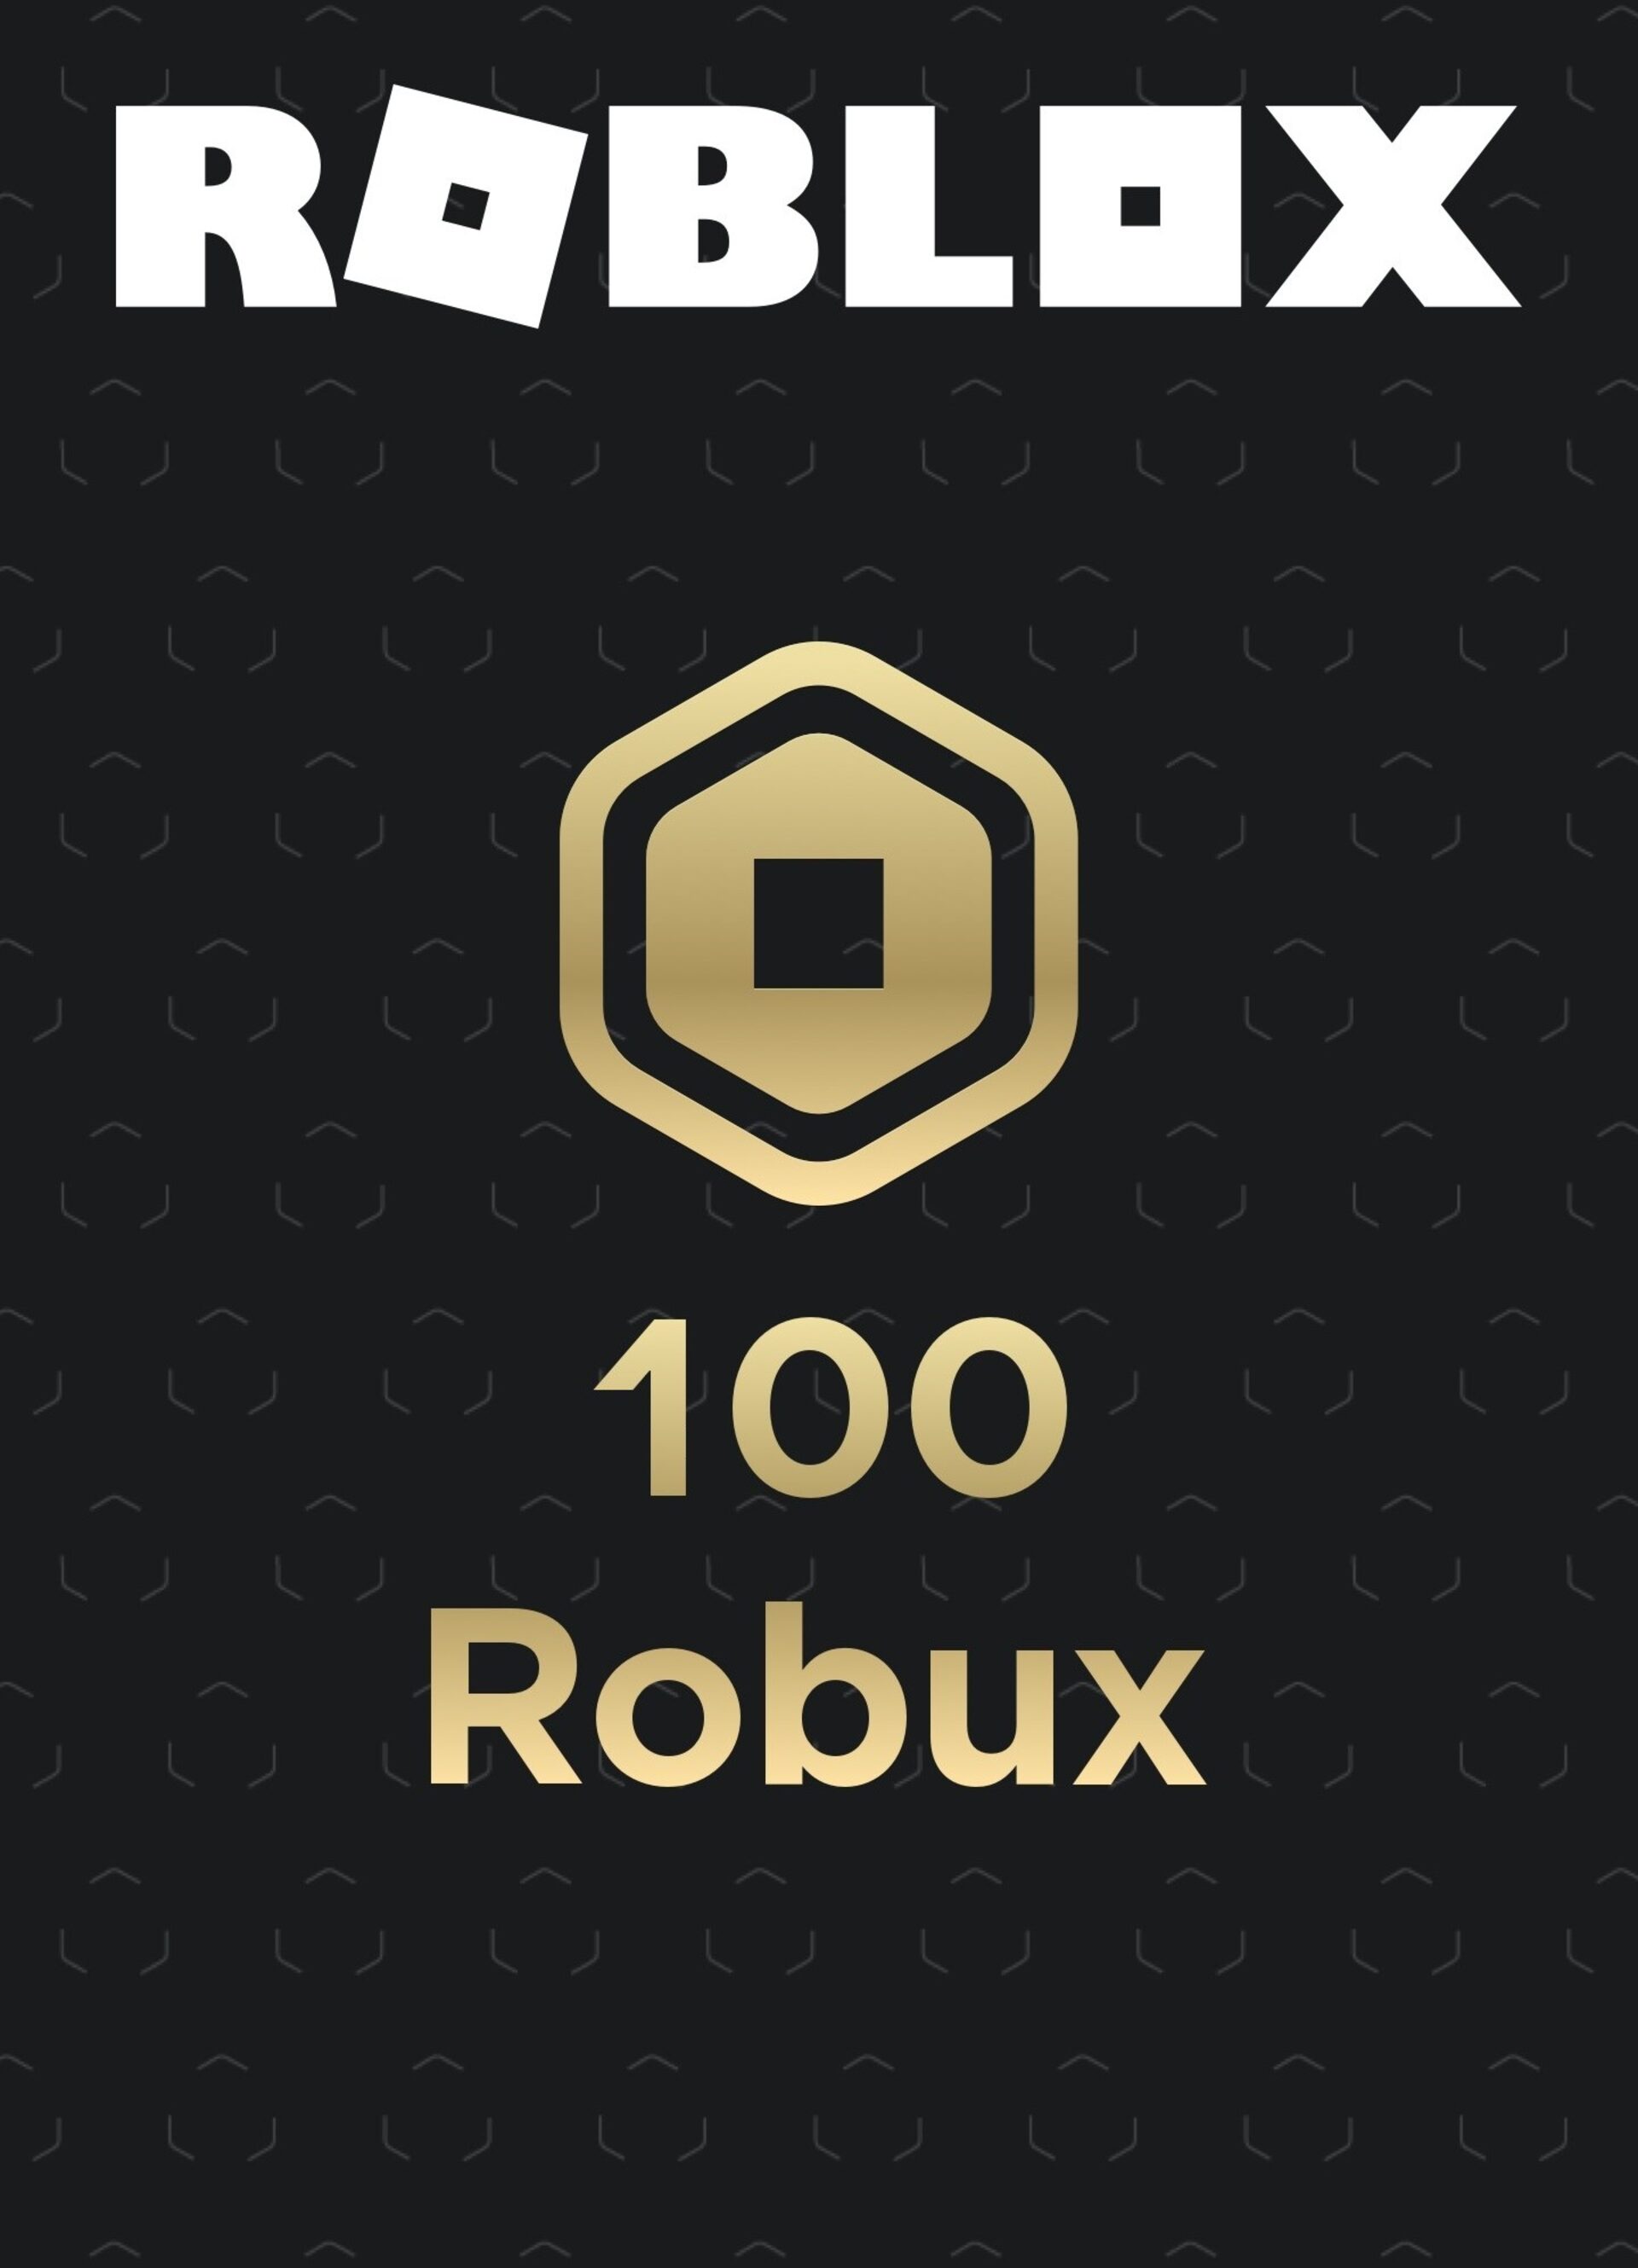 Cartão Presente Digital Roblox - 100,00